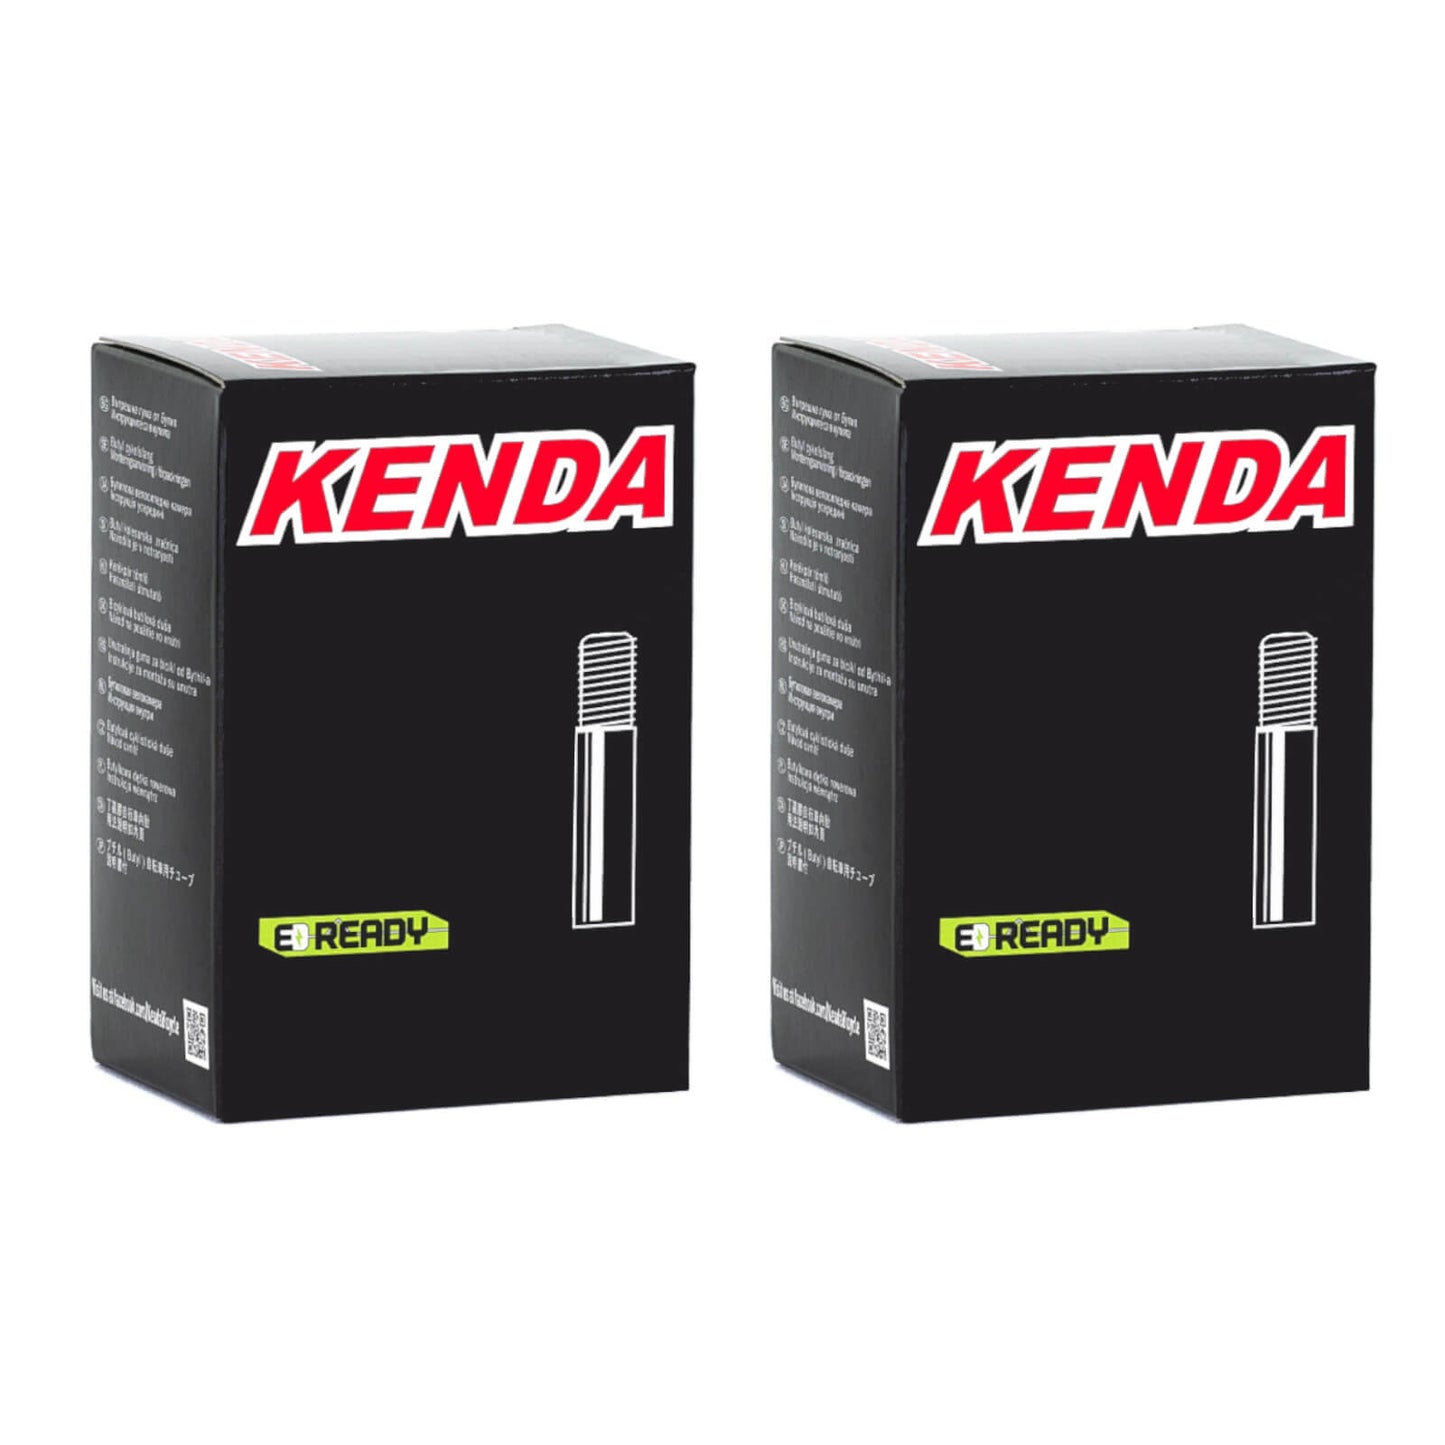 Kenda 27.5x2.0-2.4" 27.5 Inch Schrader Valve Bike Inner Tube Pack of 2